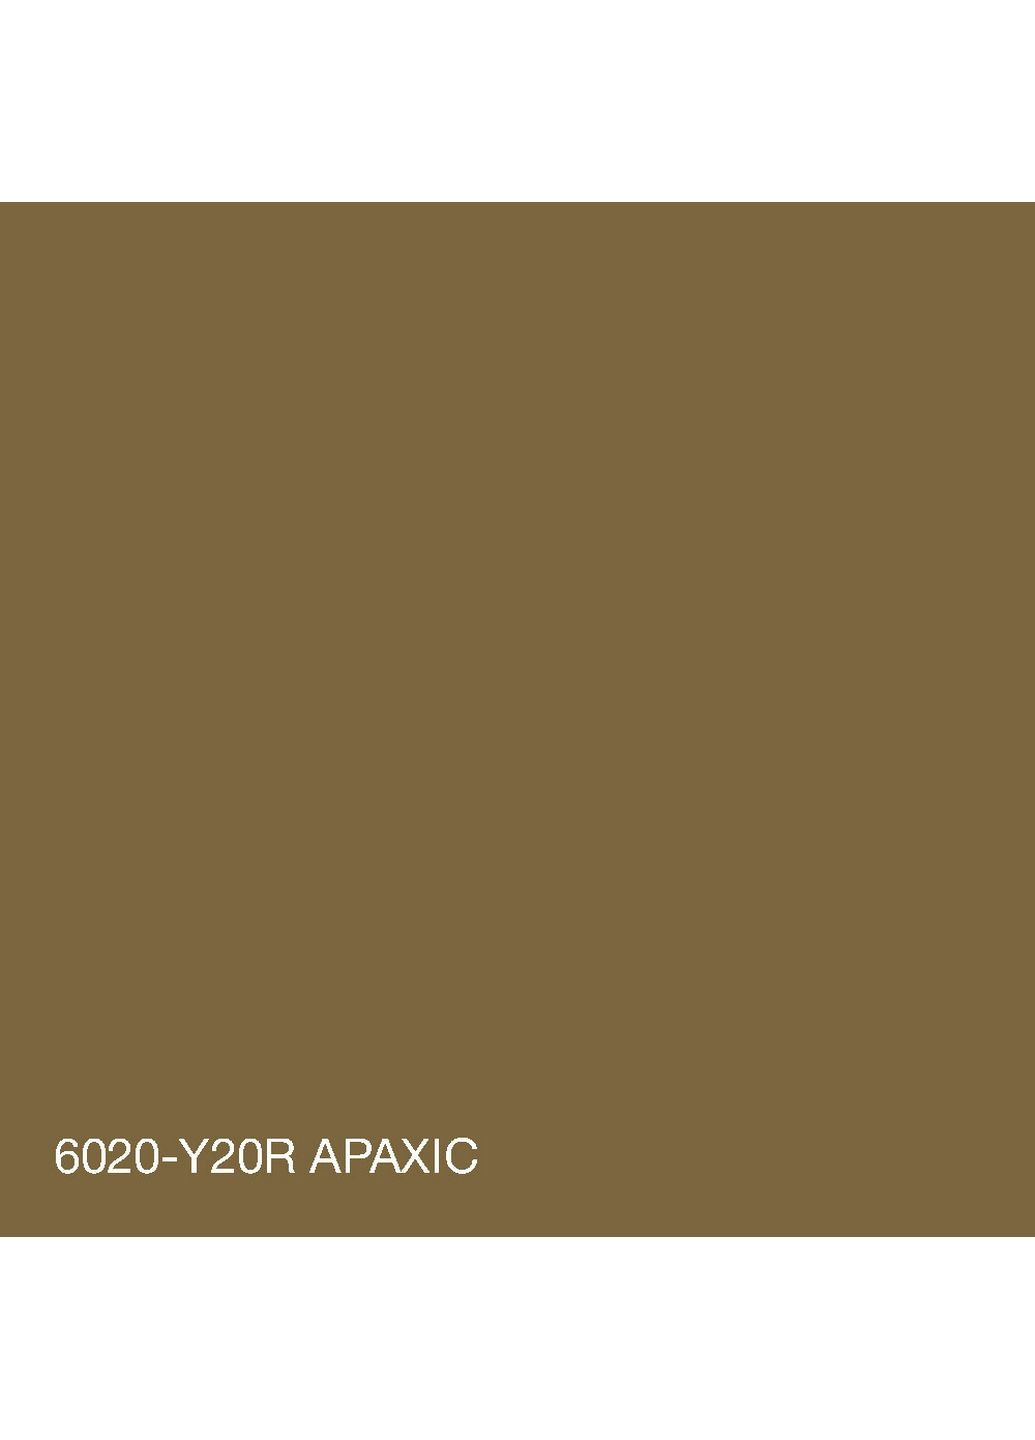 Краска фасадная акрил-латексная 6020-Y20R 5 л SkyLine (289461310)